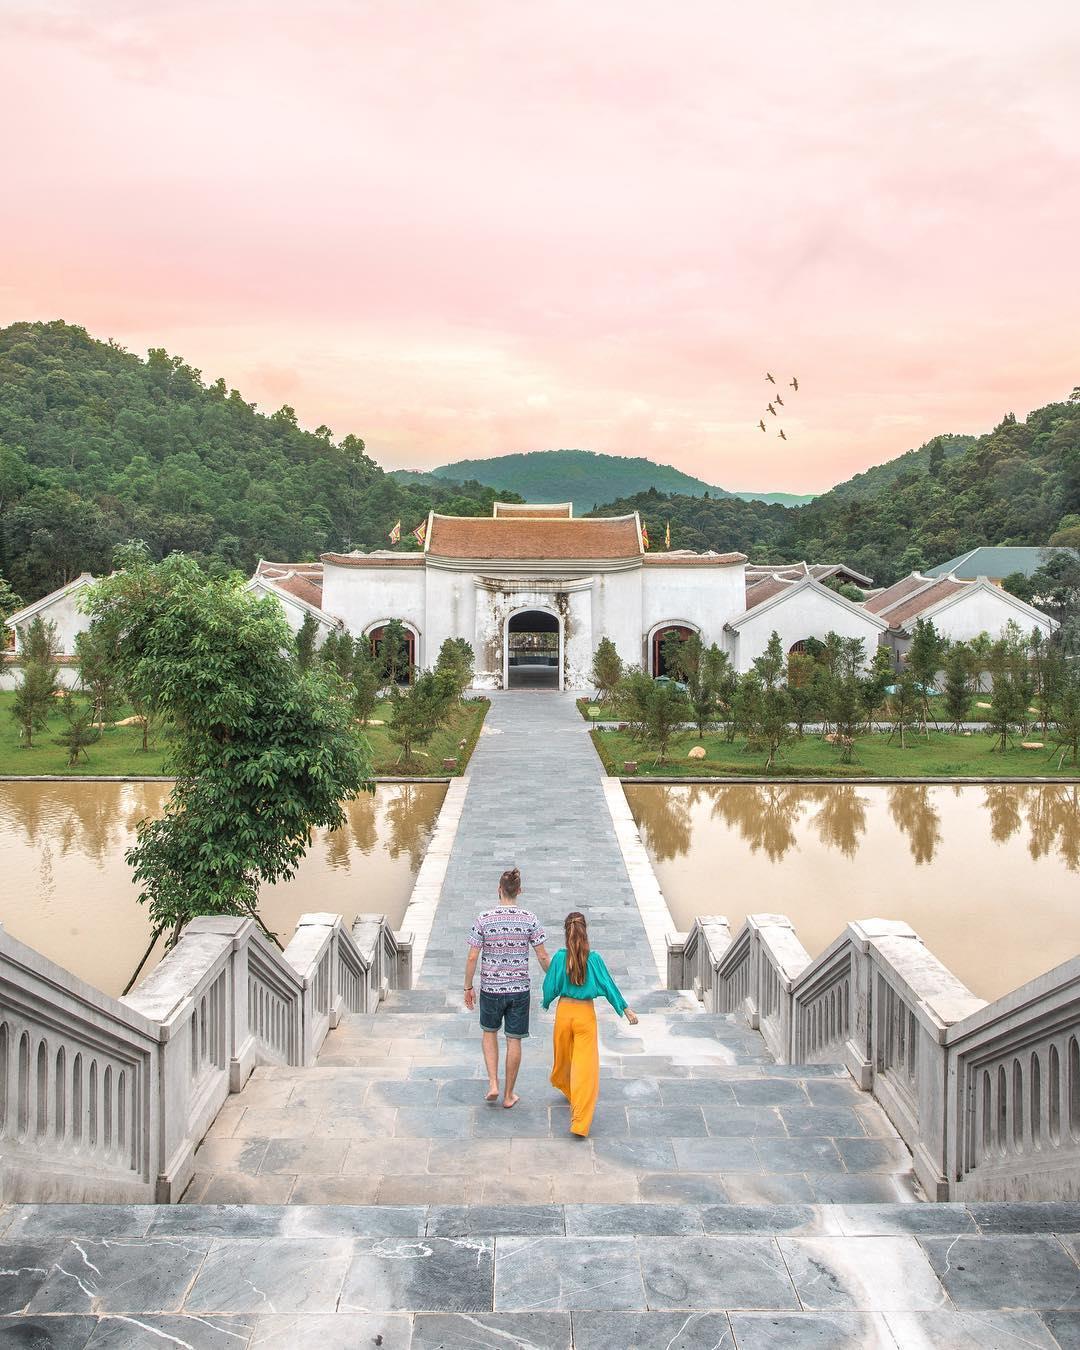 Du lịch mùa hè 2022 ở Yên Tử trải nghiệm nghỉ dưỡng luxury trong không gian thanh tịnh